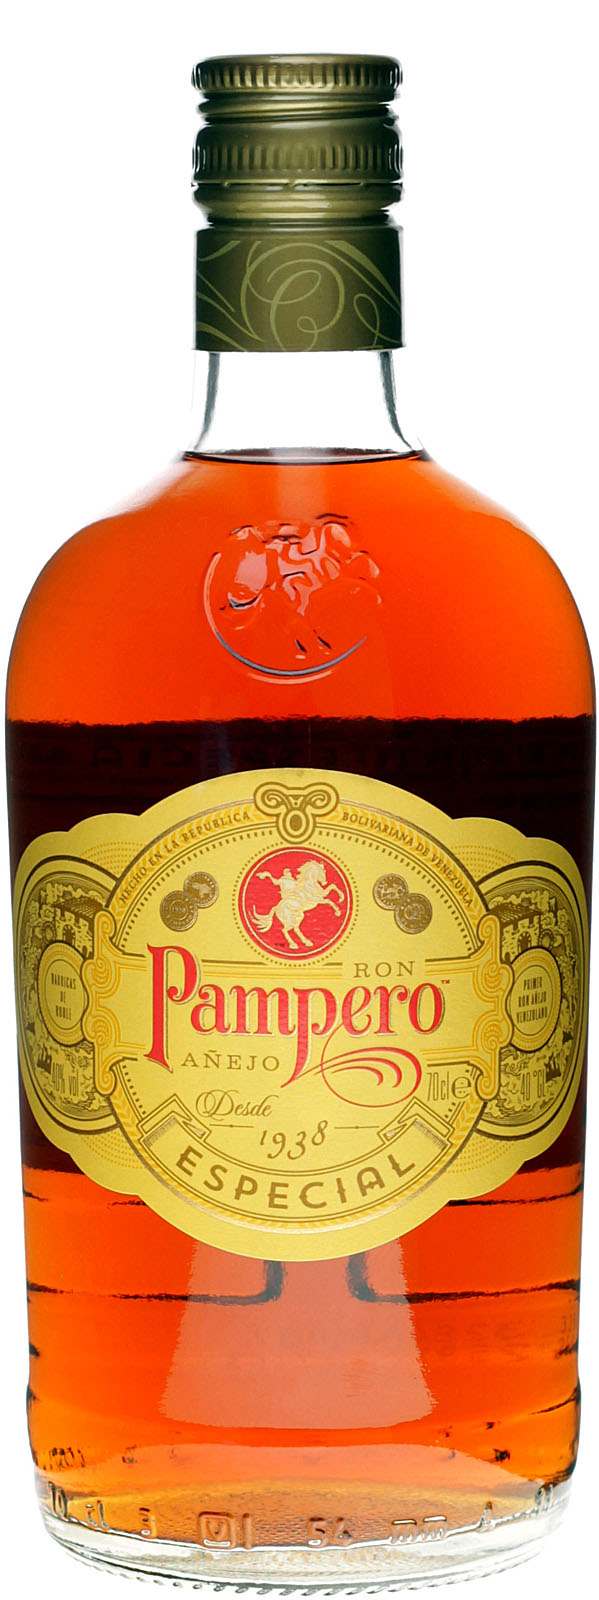 der be Venezuela - Rum Especial aus Einer Pampero Anejo